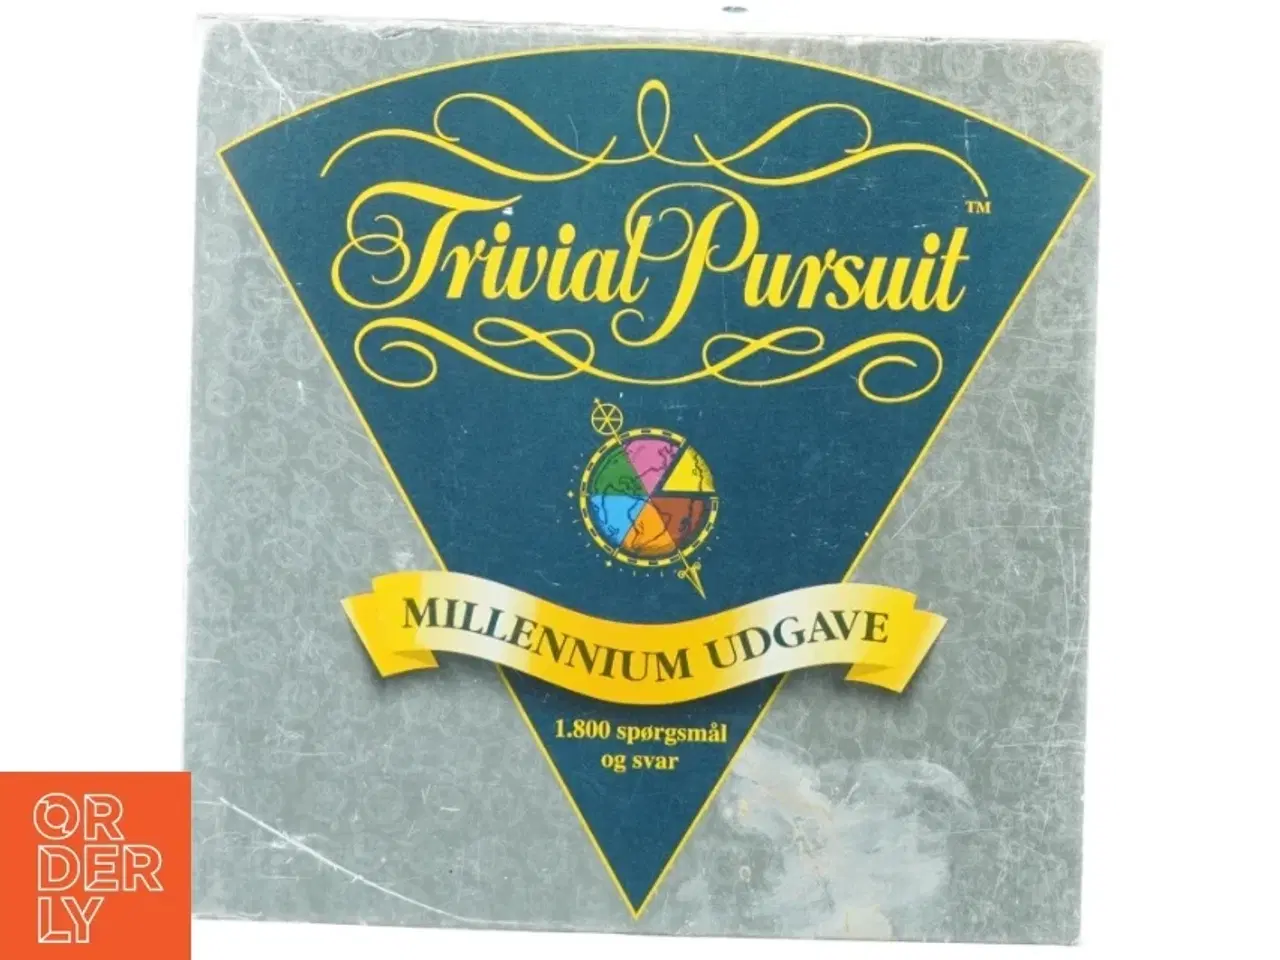 Billede 1 - Trivial pursuit millennium udgave fra Hasbro (str. 27 cm)